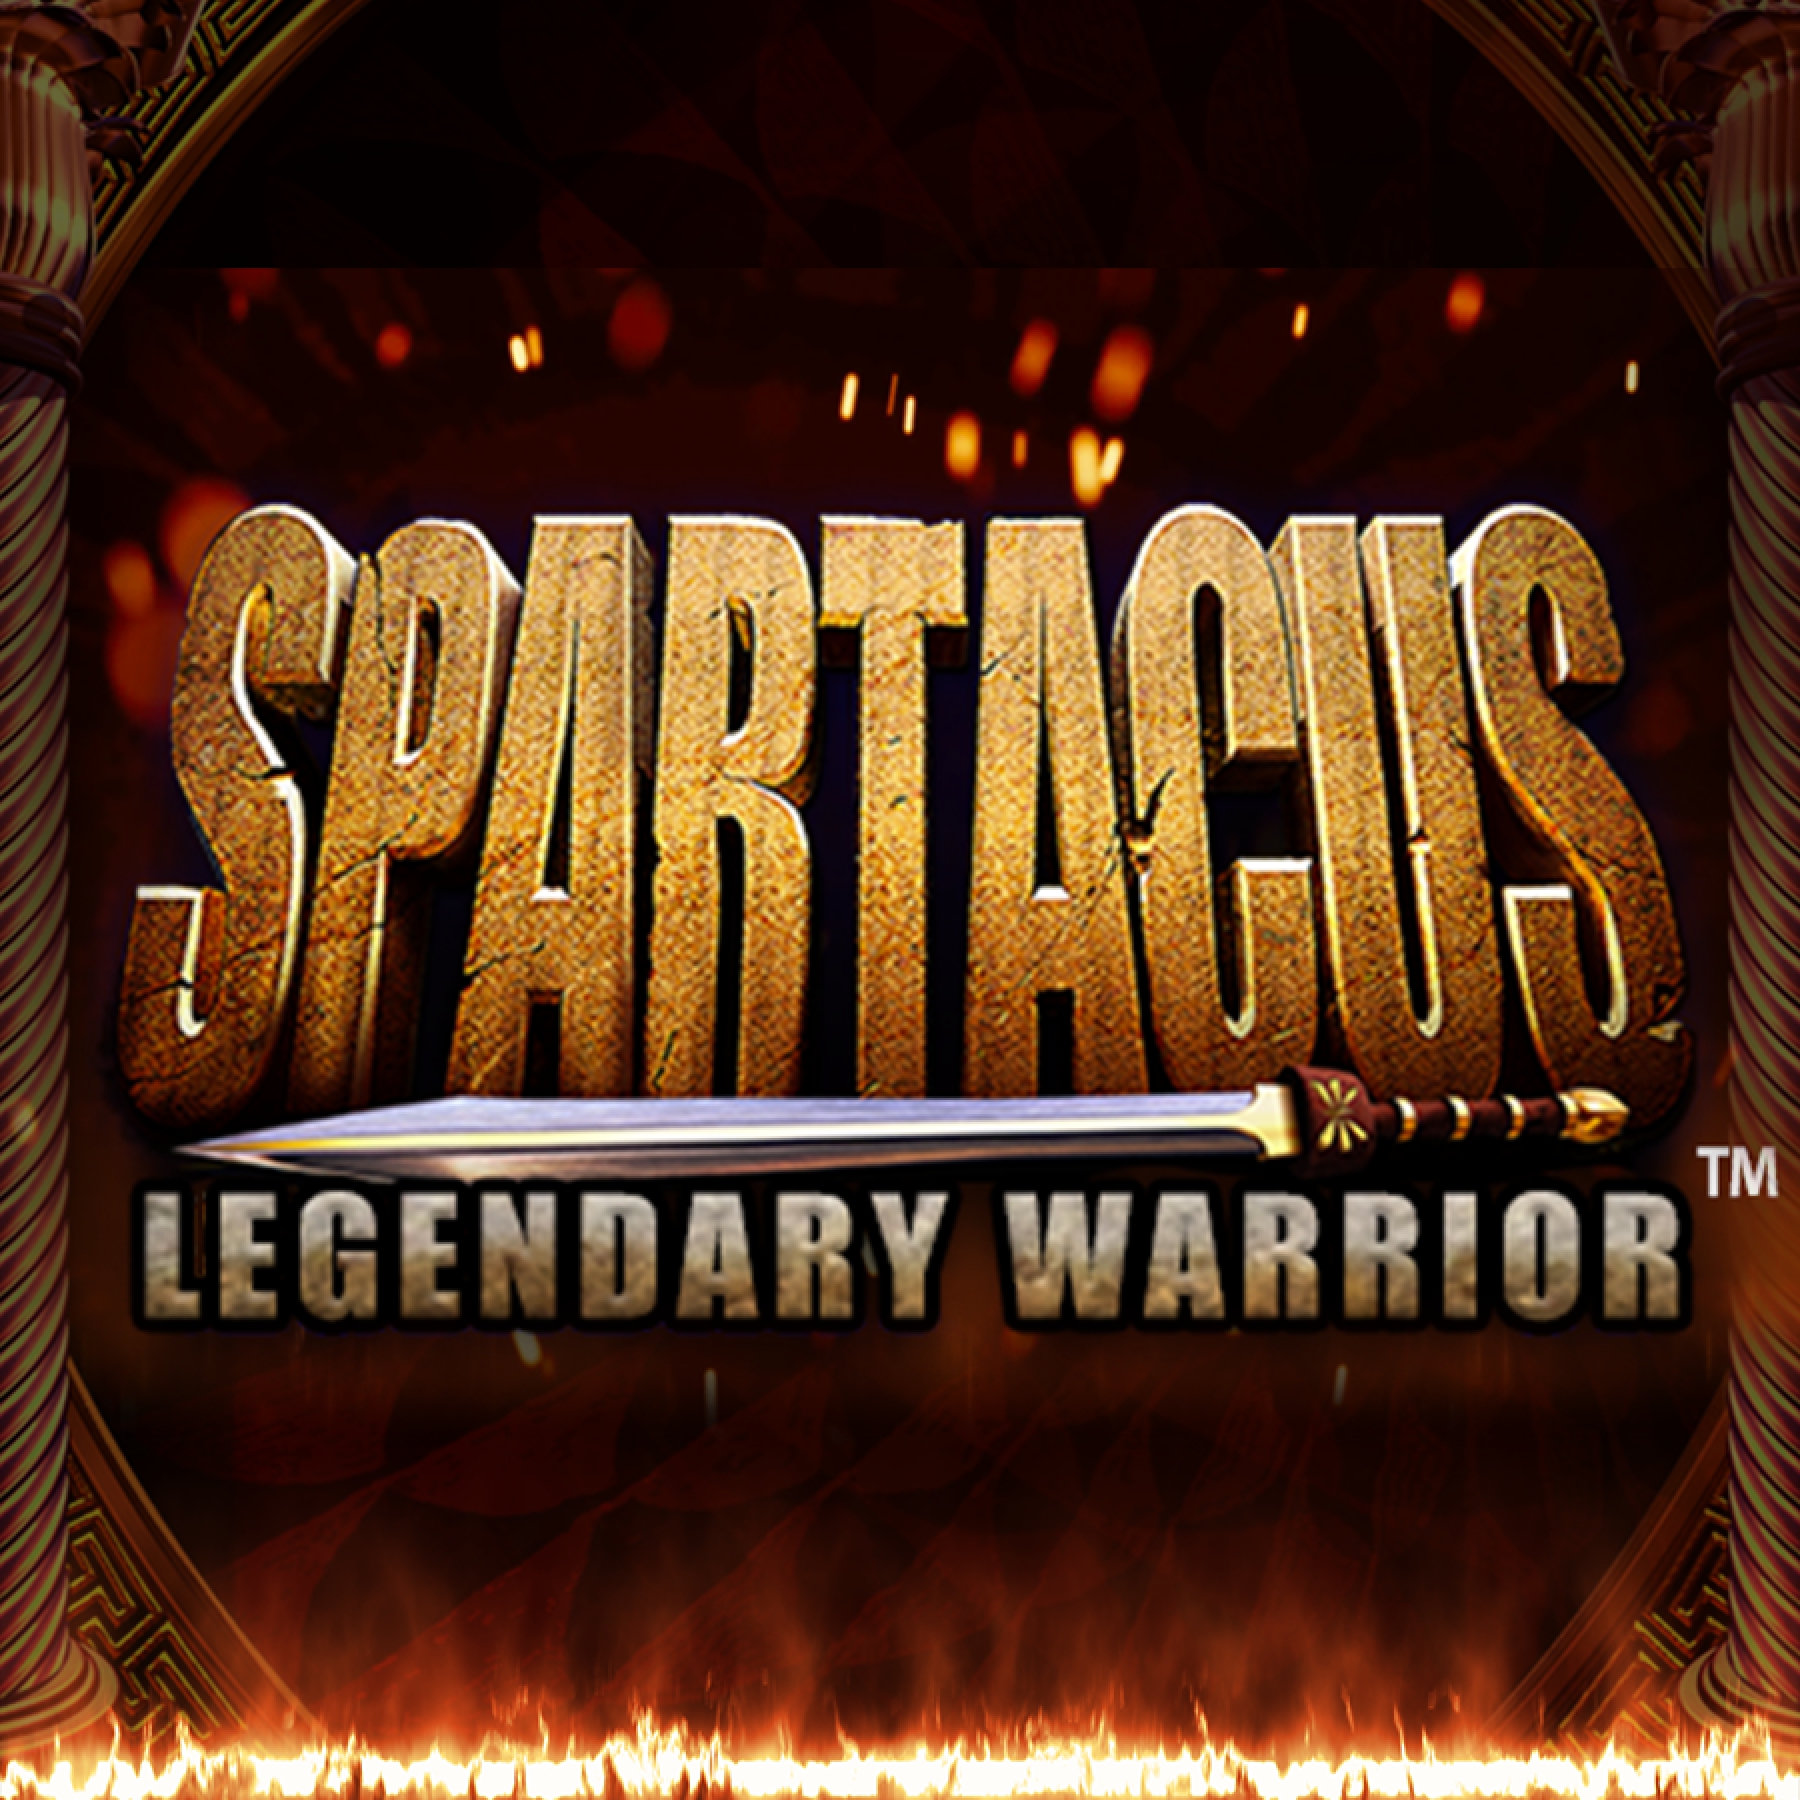 Spartacus Legendary Warrior demo